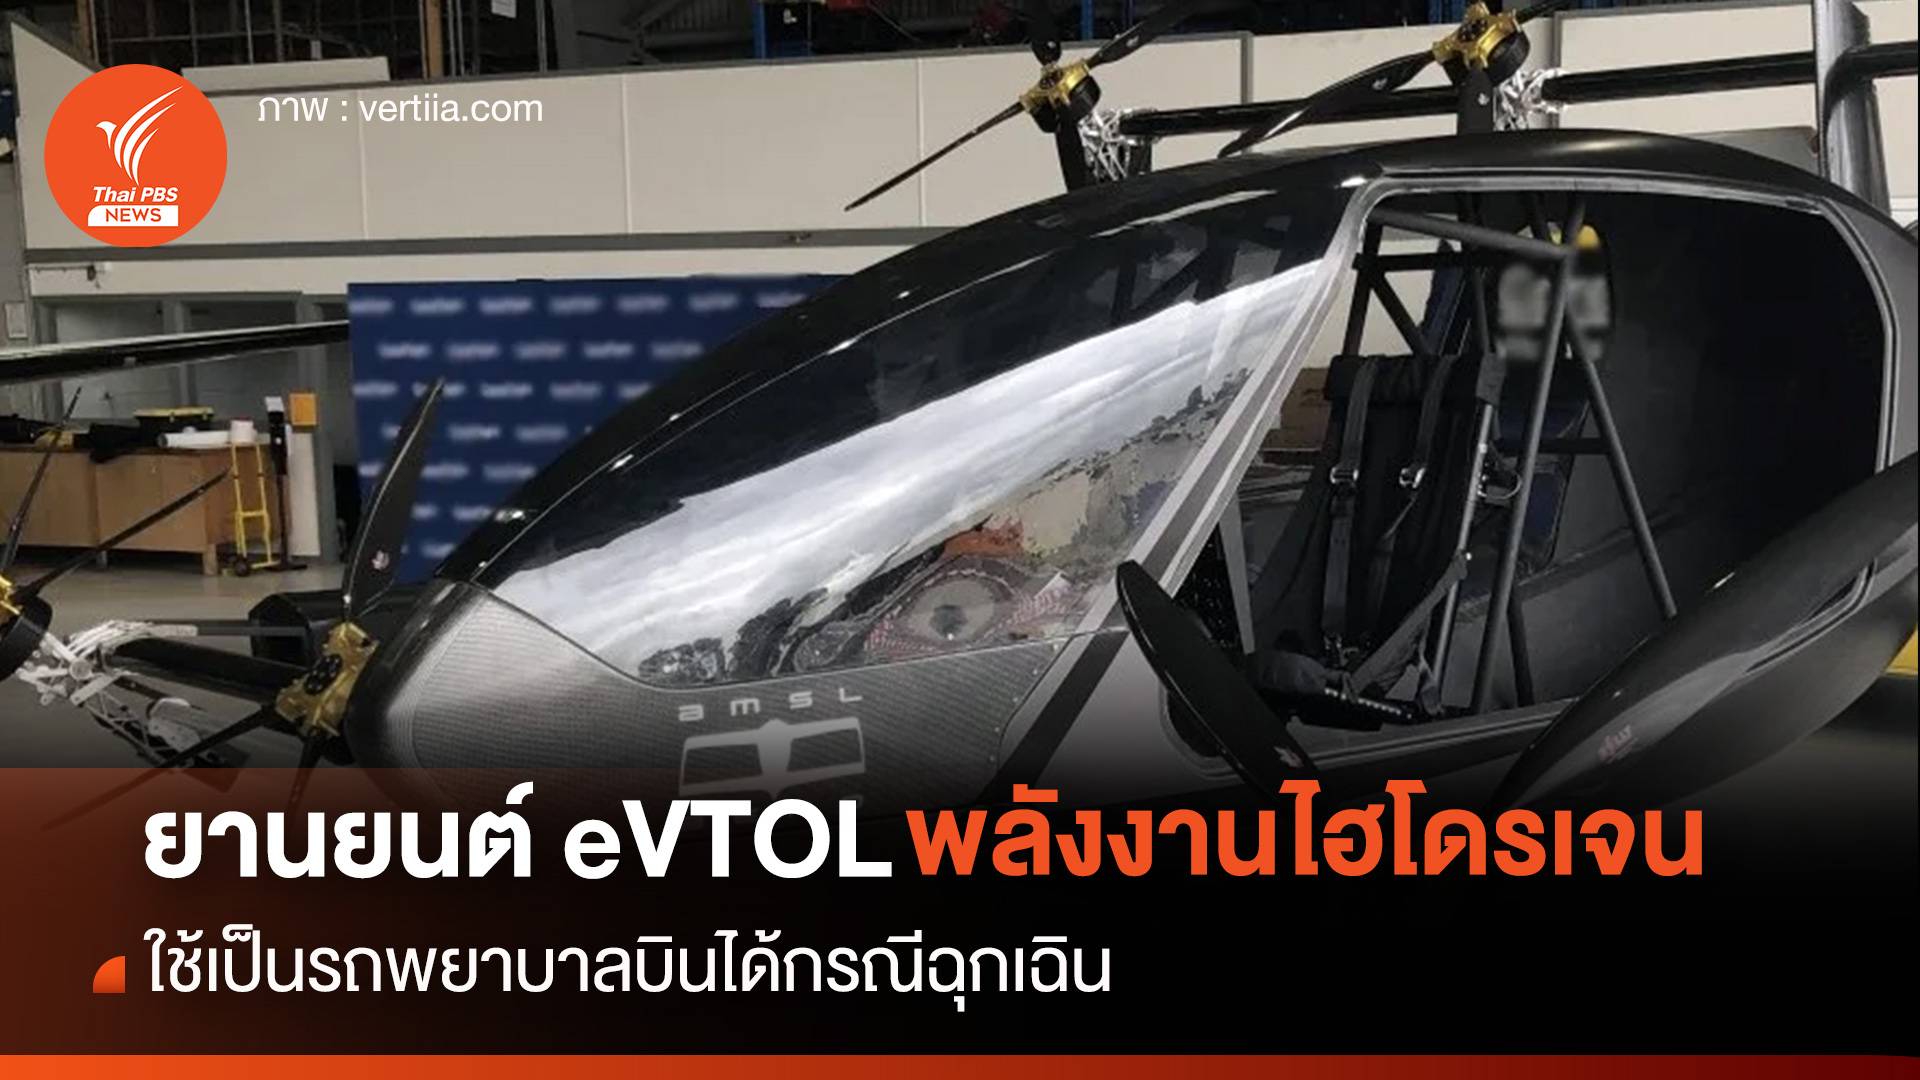 ยานยนต์ eVTOL พลังงานไฮโดรเจน ใช้เป็นรถพยาบาลบินได้กรณีฉุกเฉิน